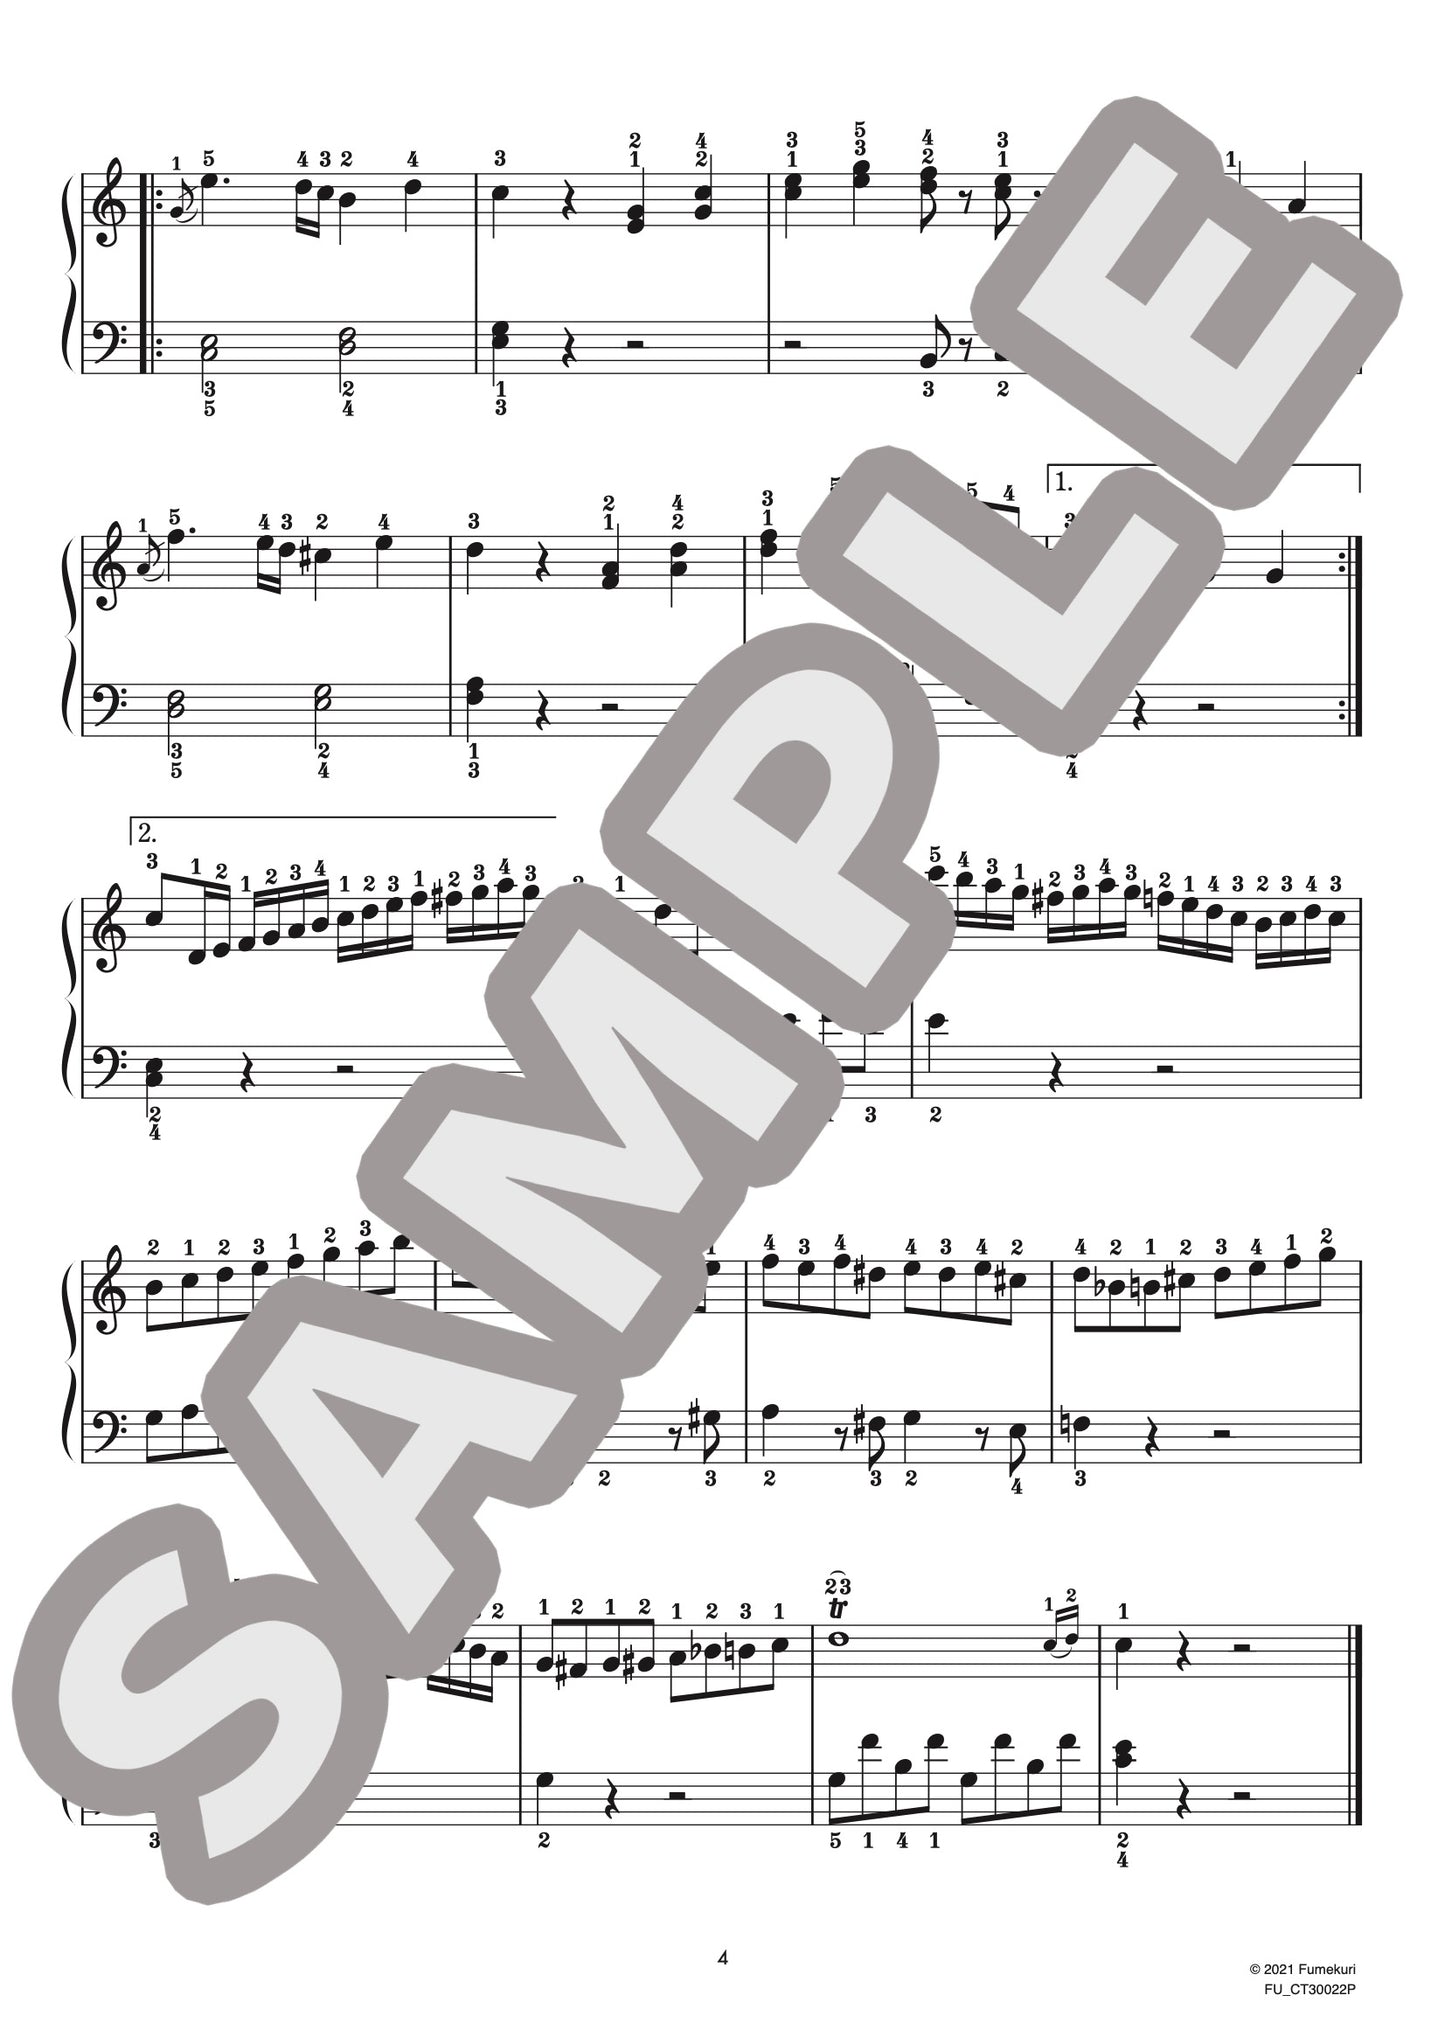 ピアノ協奏曲 第20番 第1楽章（ヴォルフガング・アマデウス・モーツァルト) / クラシック・オリジナル楽曲【初中級】